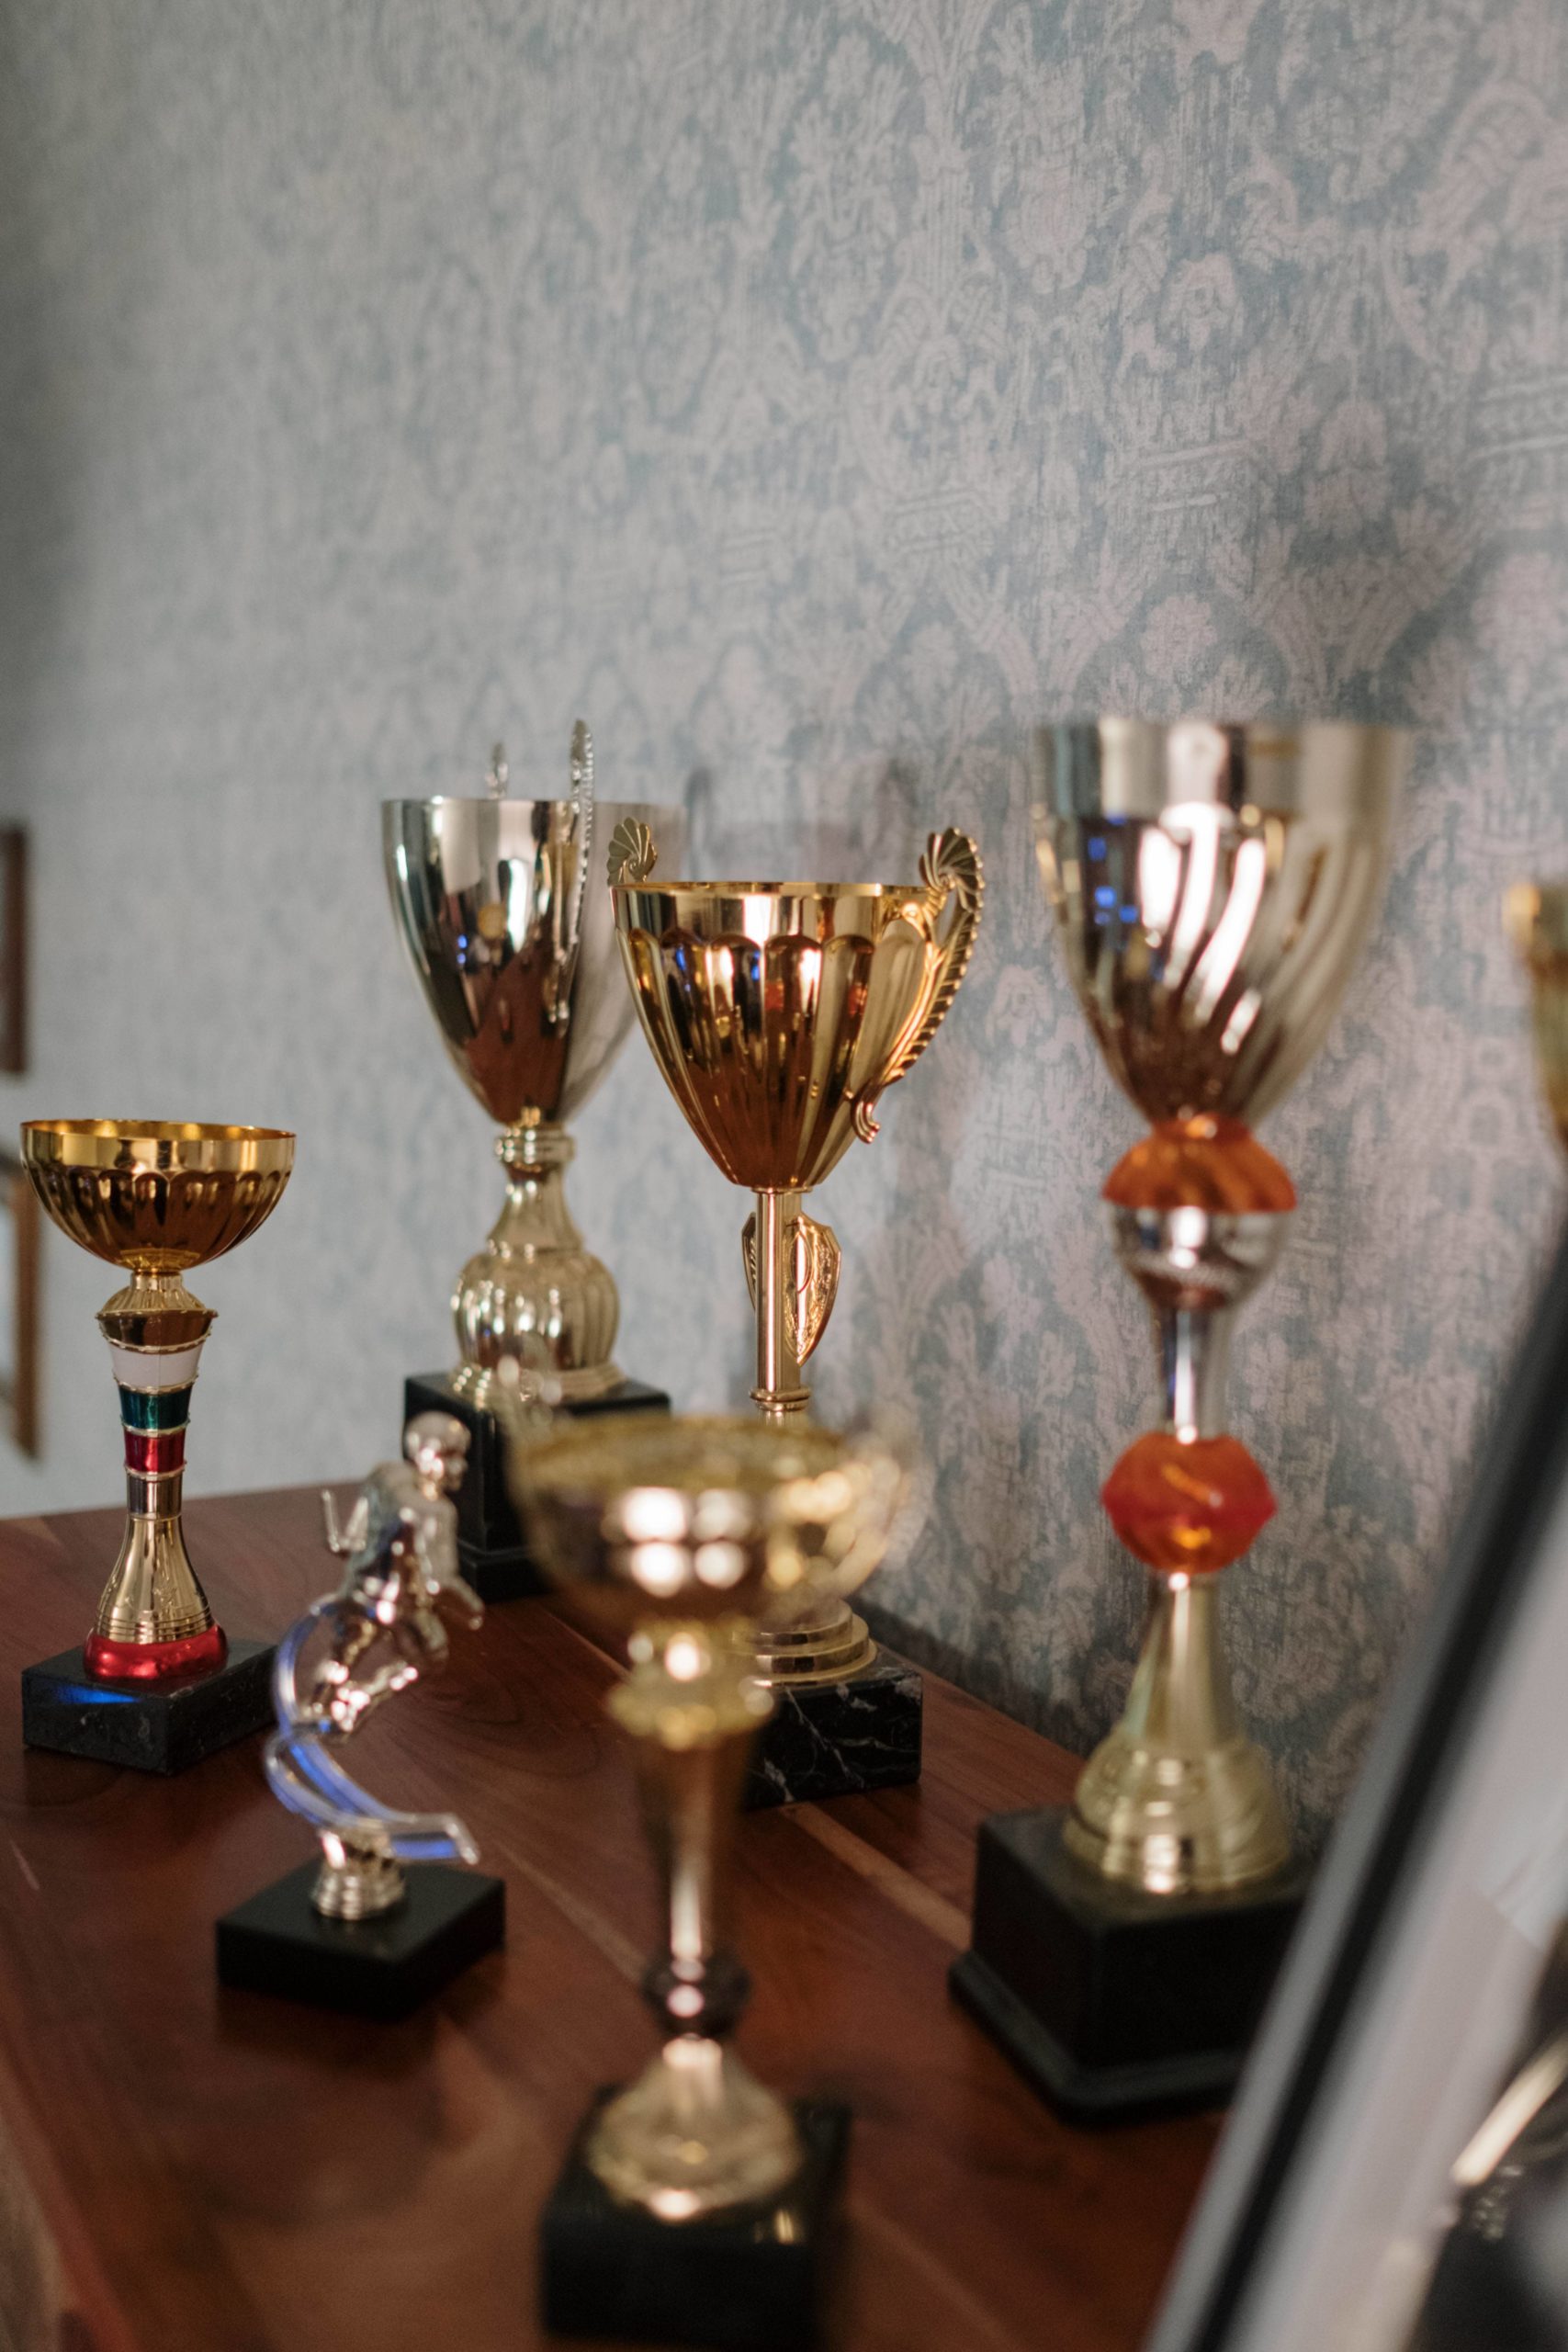 Image of PR awards received during award season